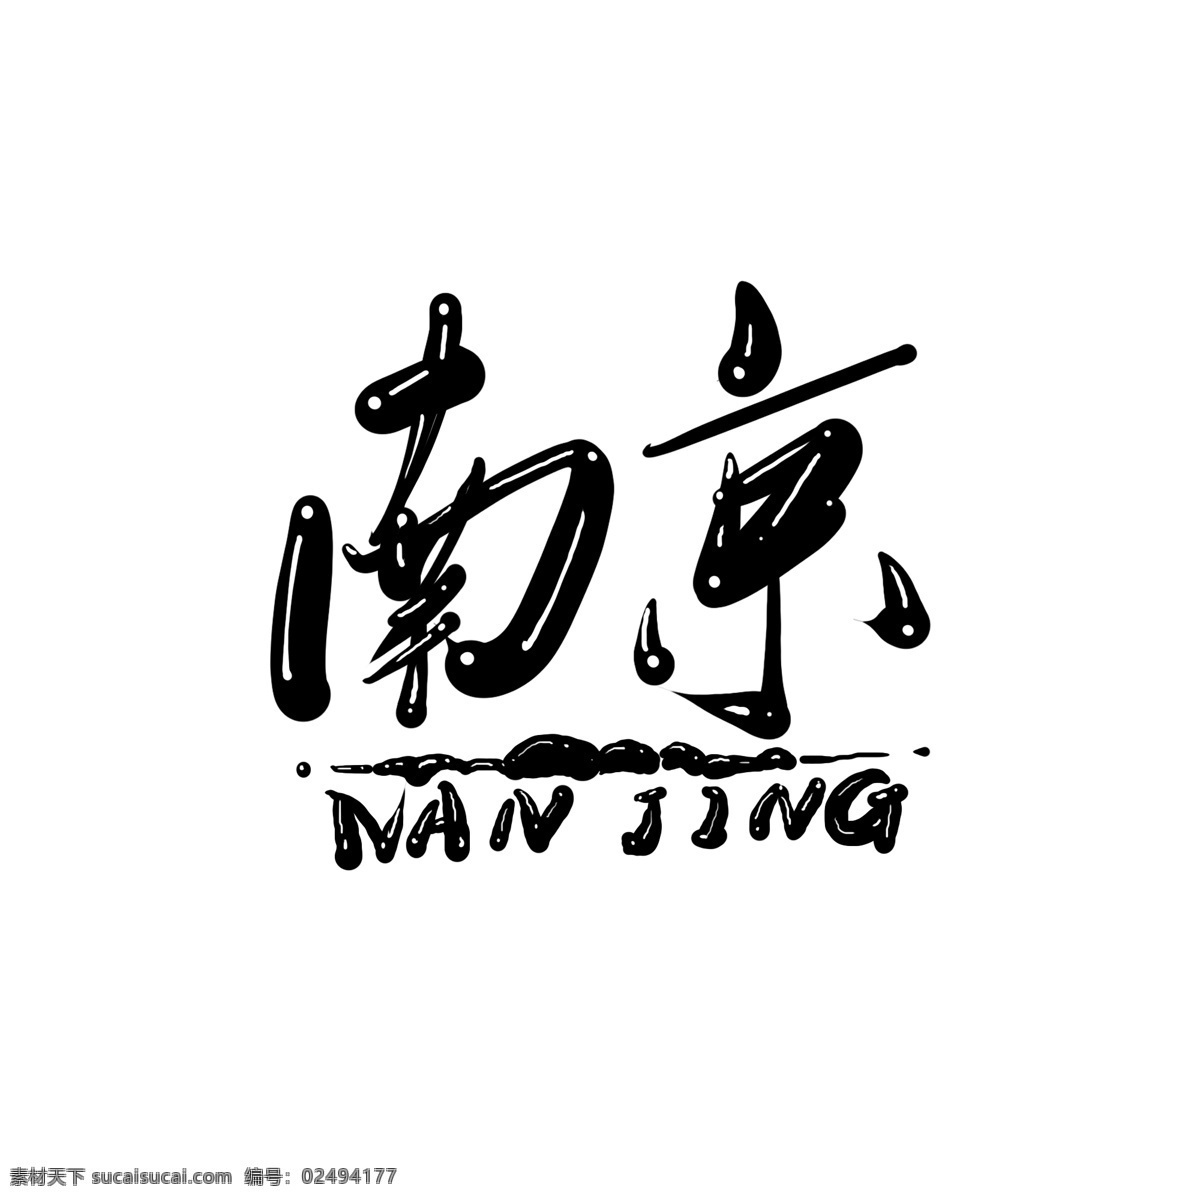 原创 中国 风 南京 艺术 字 字体 秀美 江南 中国风 字体设计 书法字体 南京艺术字 南京创意字体 南京logo